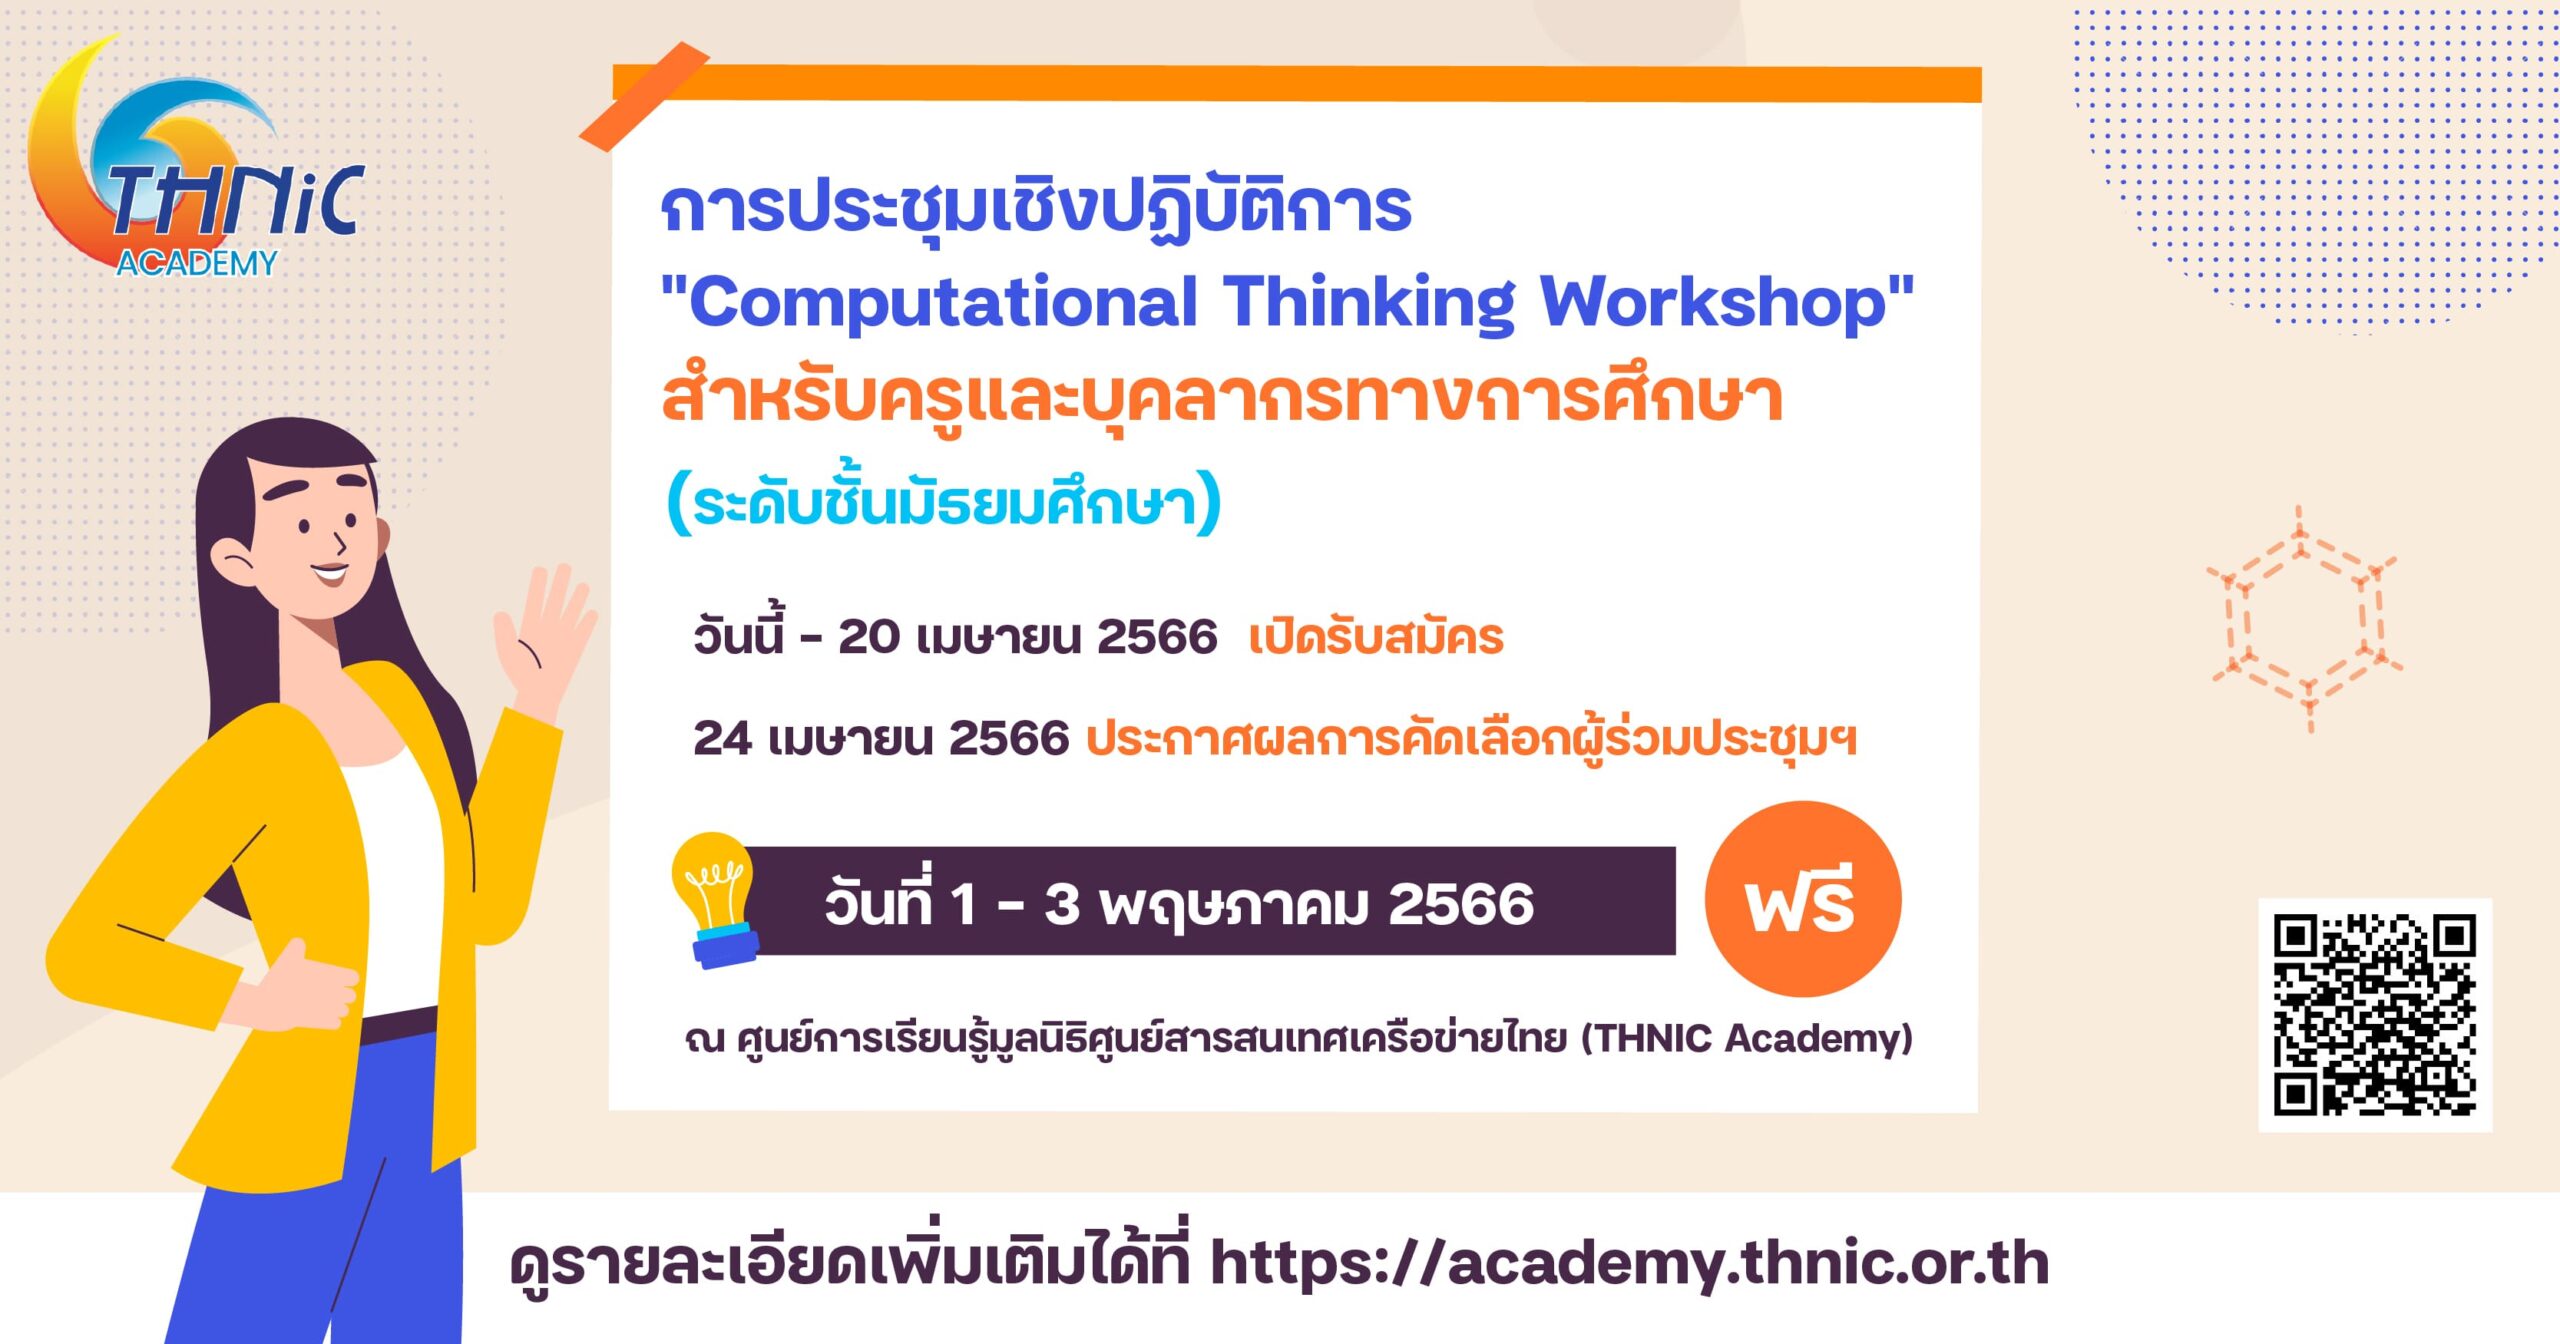 การประชุมเชิงปฏิบัติการ “Computational Thinking Workshop”  สำหรับครูและบุคลากรทางการศึกษา (ระดับชั้นมัธยมศึกษา)